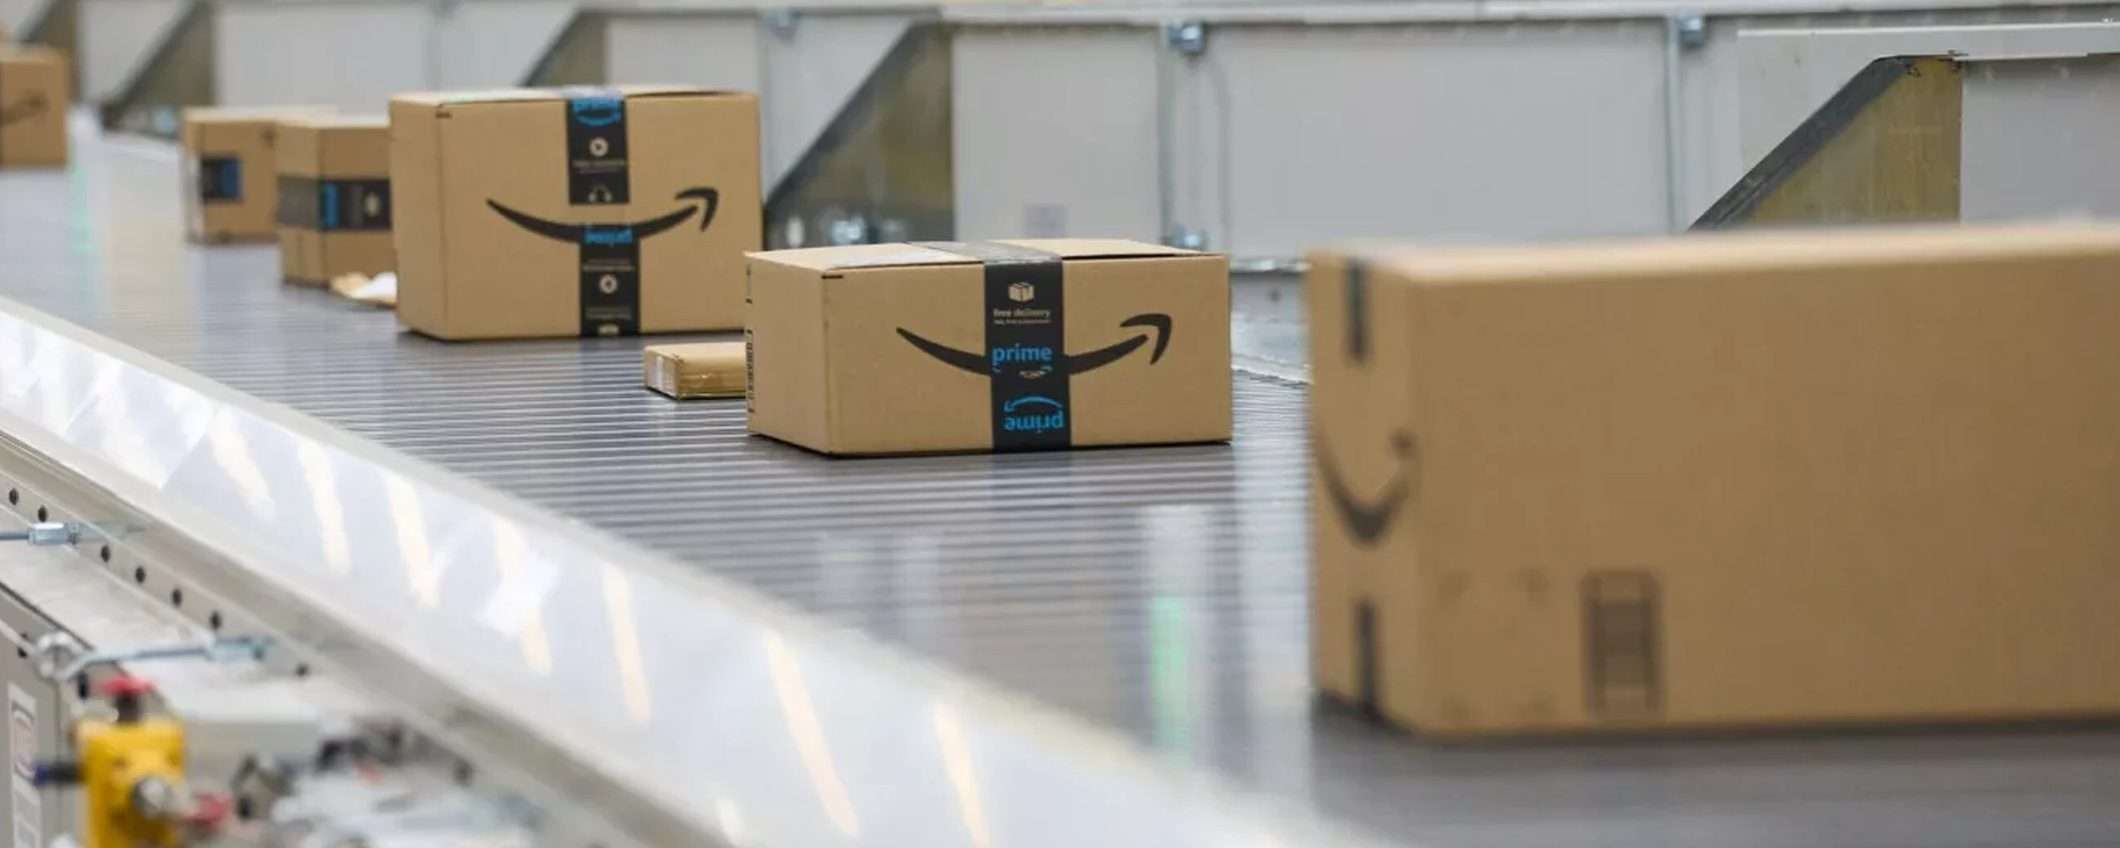 Amazon: novità per limitare la contraffazione